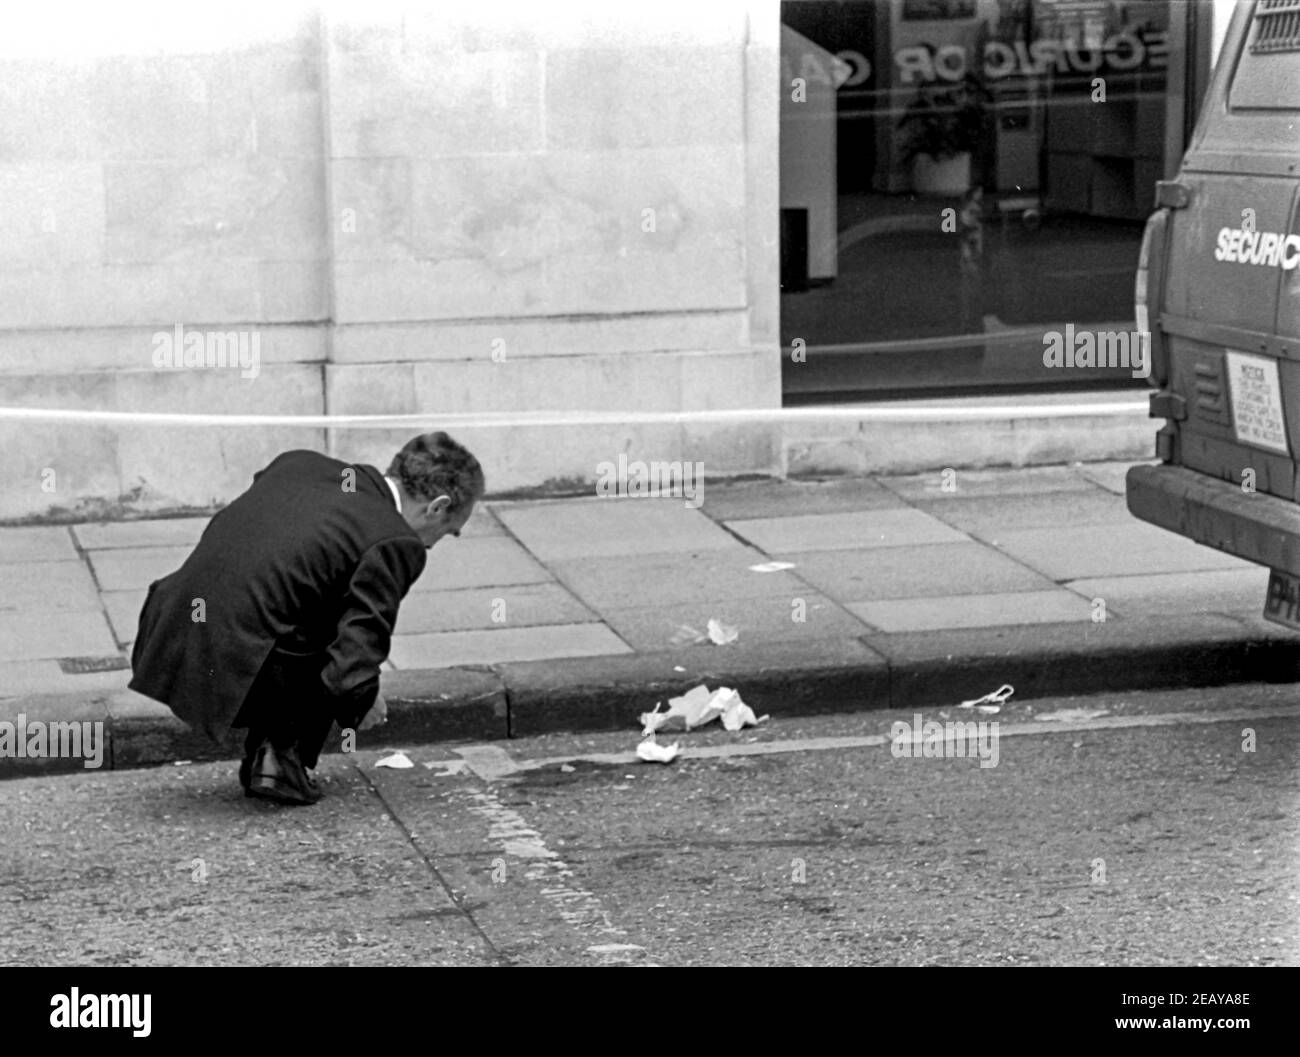 HEMEL HEMPSTEAD - INGHILTERRA 14 Apr 88: La polizia indaga sulla scena dell'assassinio di PC Frank Mason che ha affrontato rapinatori armati fuori Barclays Bank, Hem Foto Stock